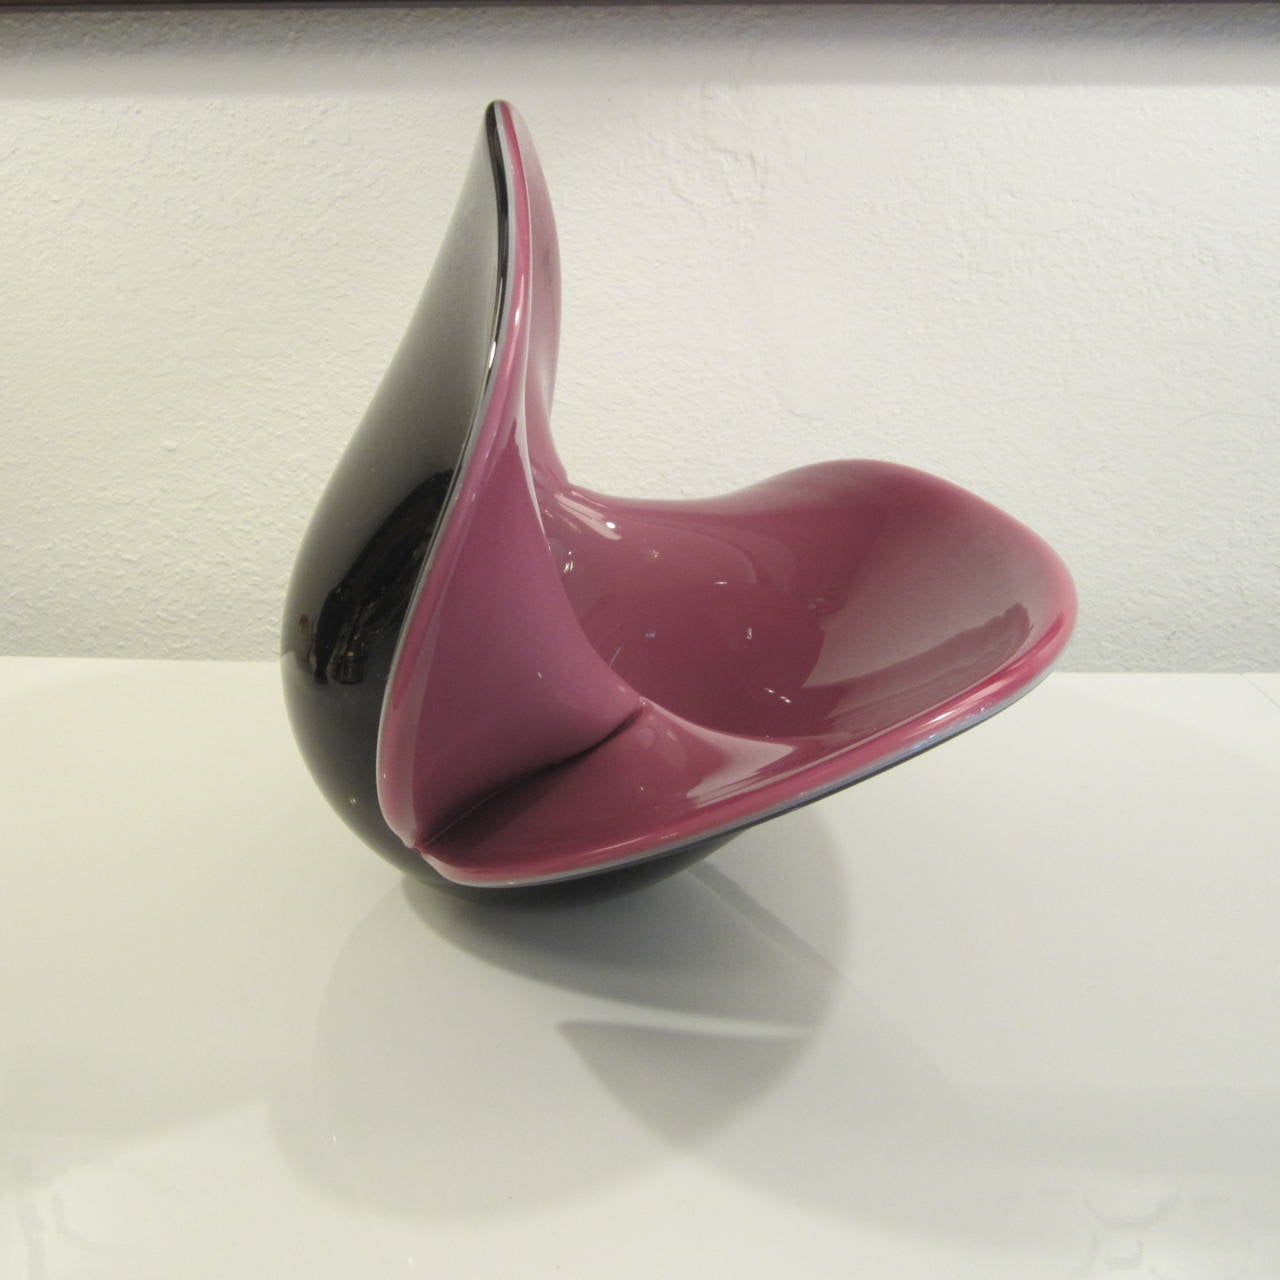 Formia Vetri Di Murano Large Handblown Glass Centerpiece Shell Bowl For Sale 2